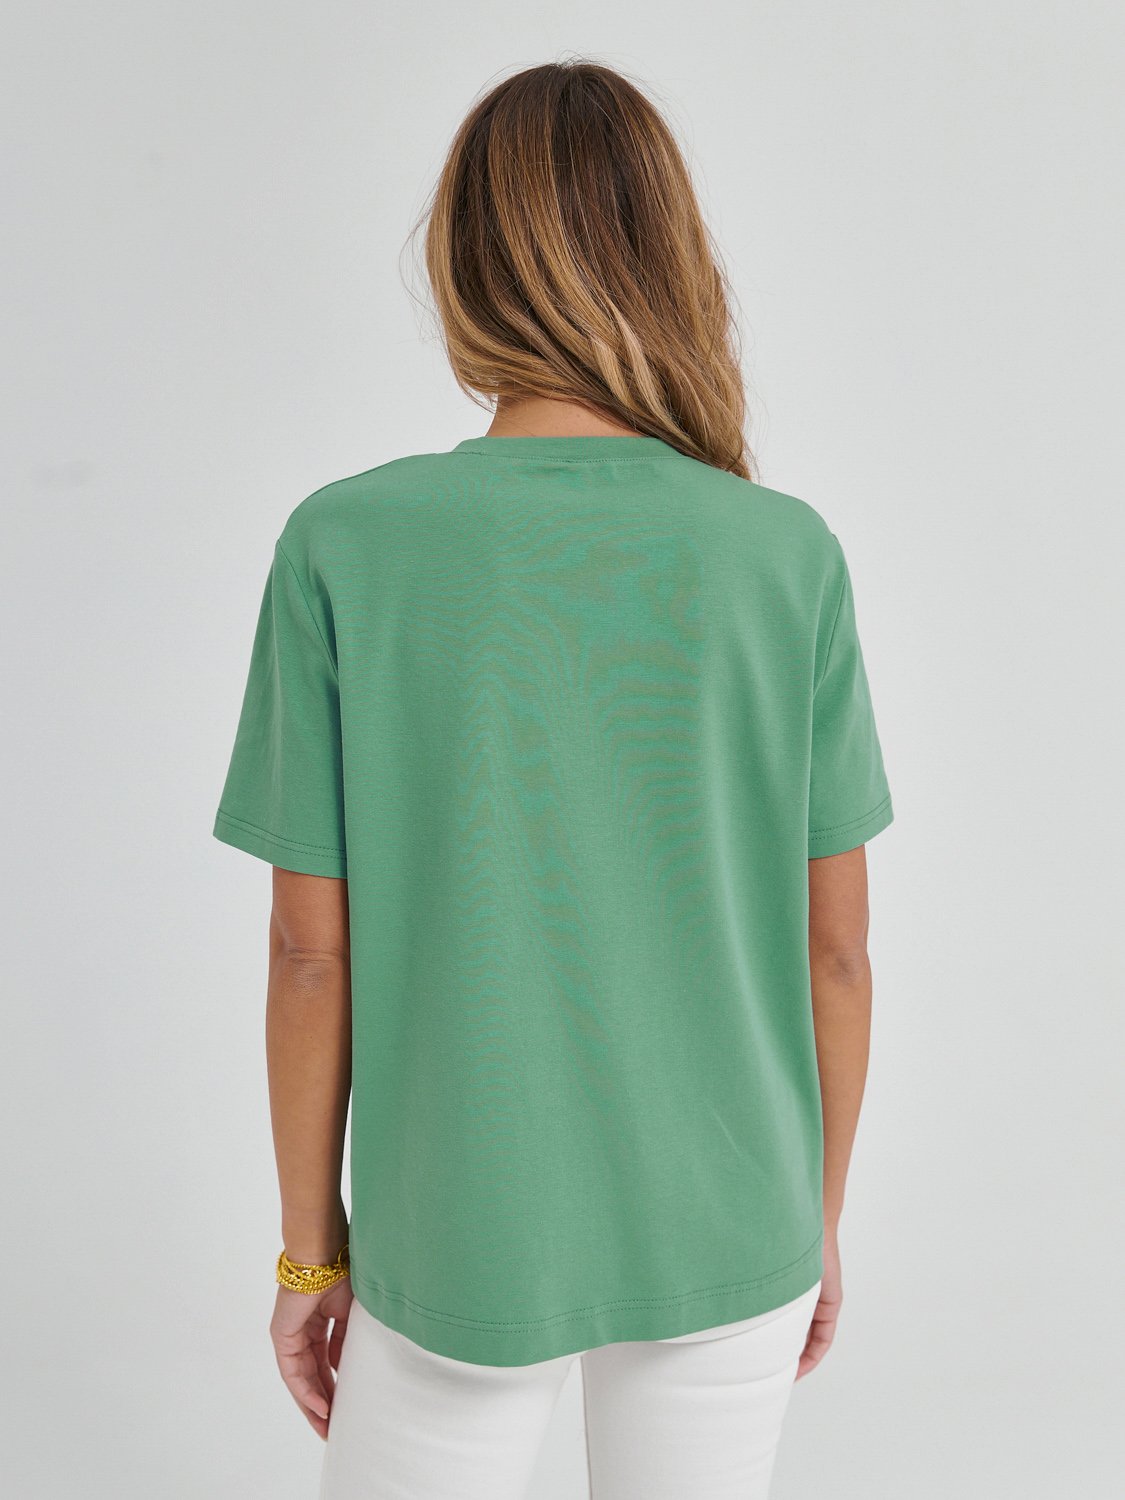 Женская футболка с принтом зеленого цвета